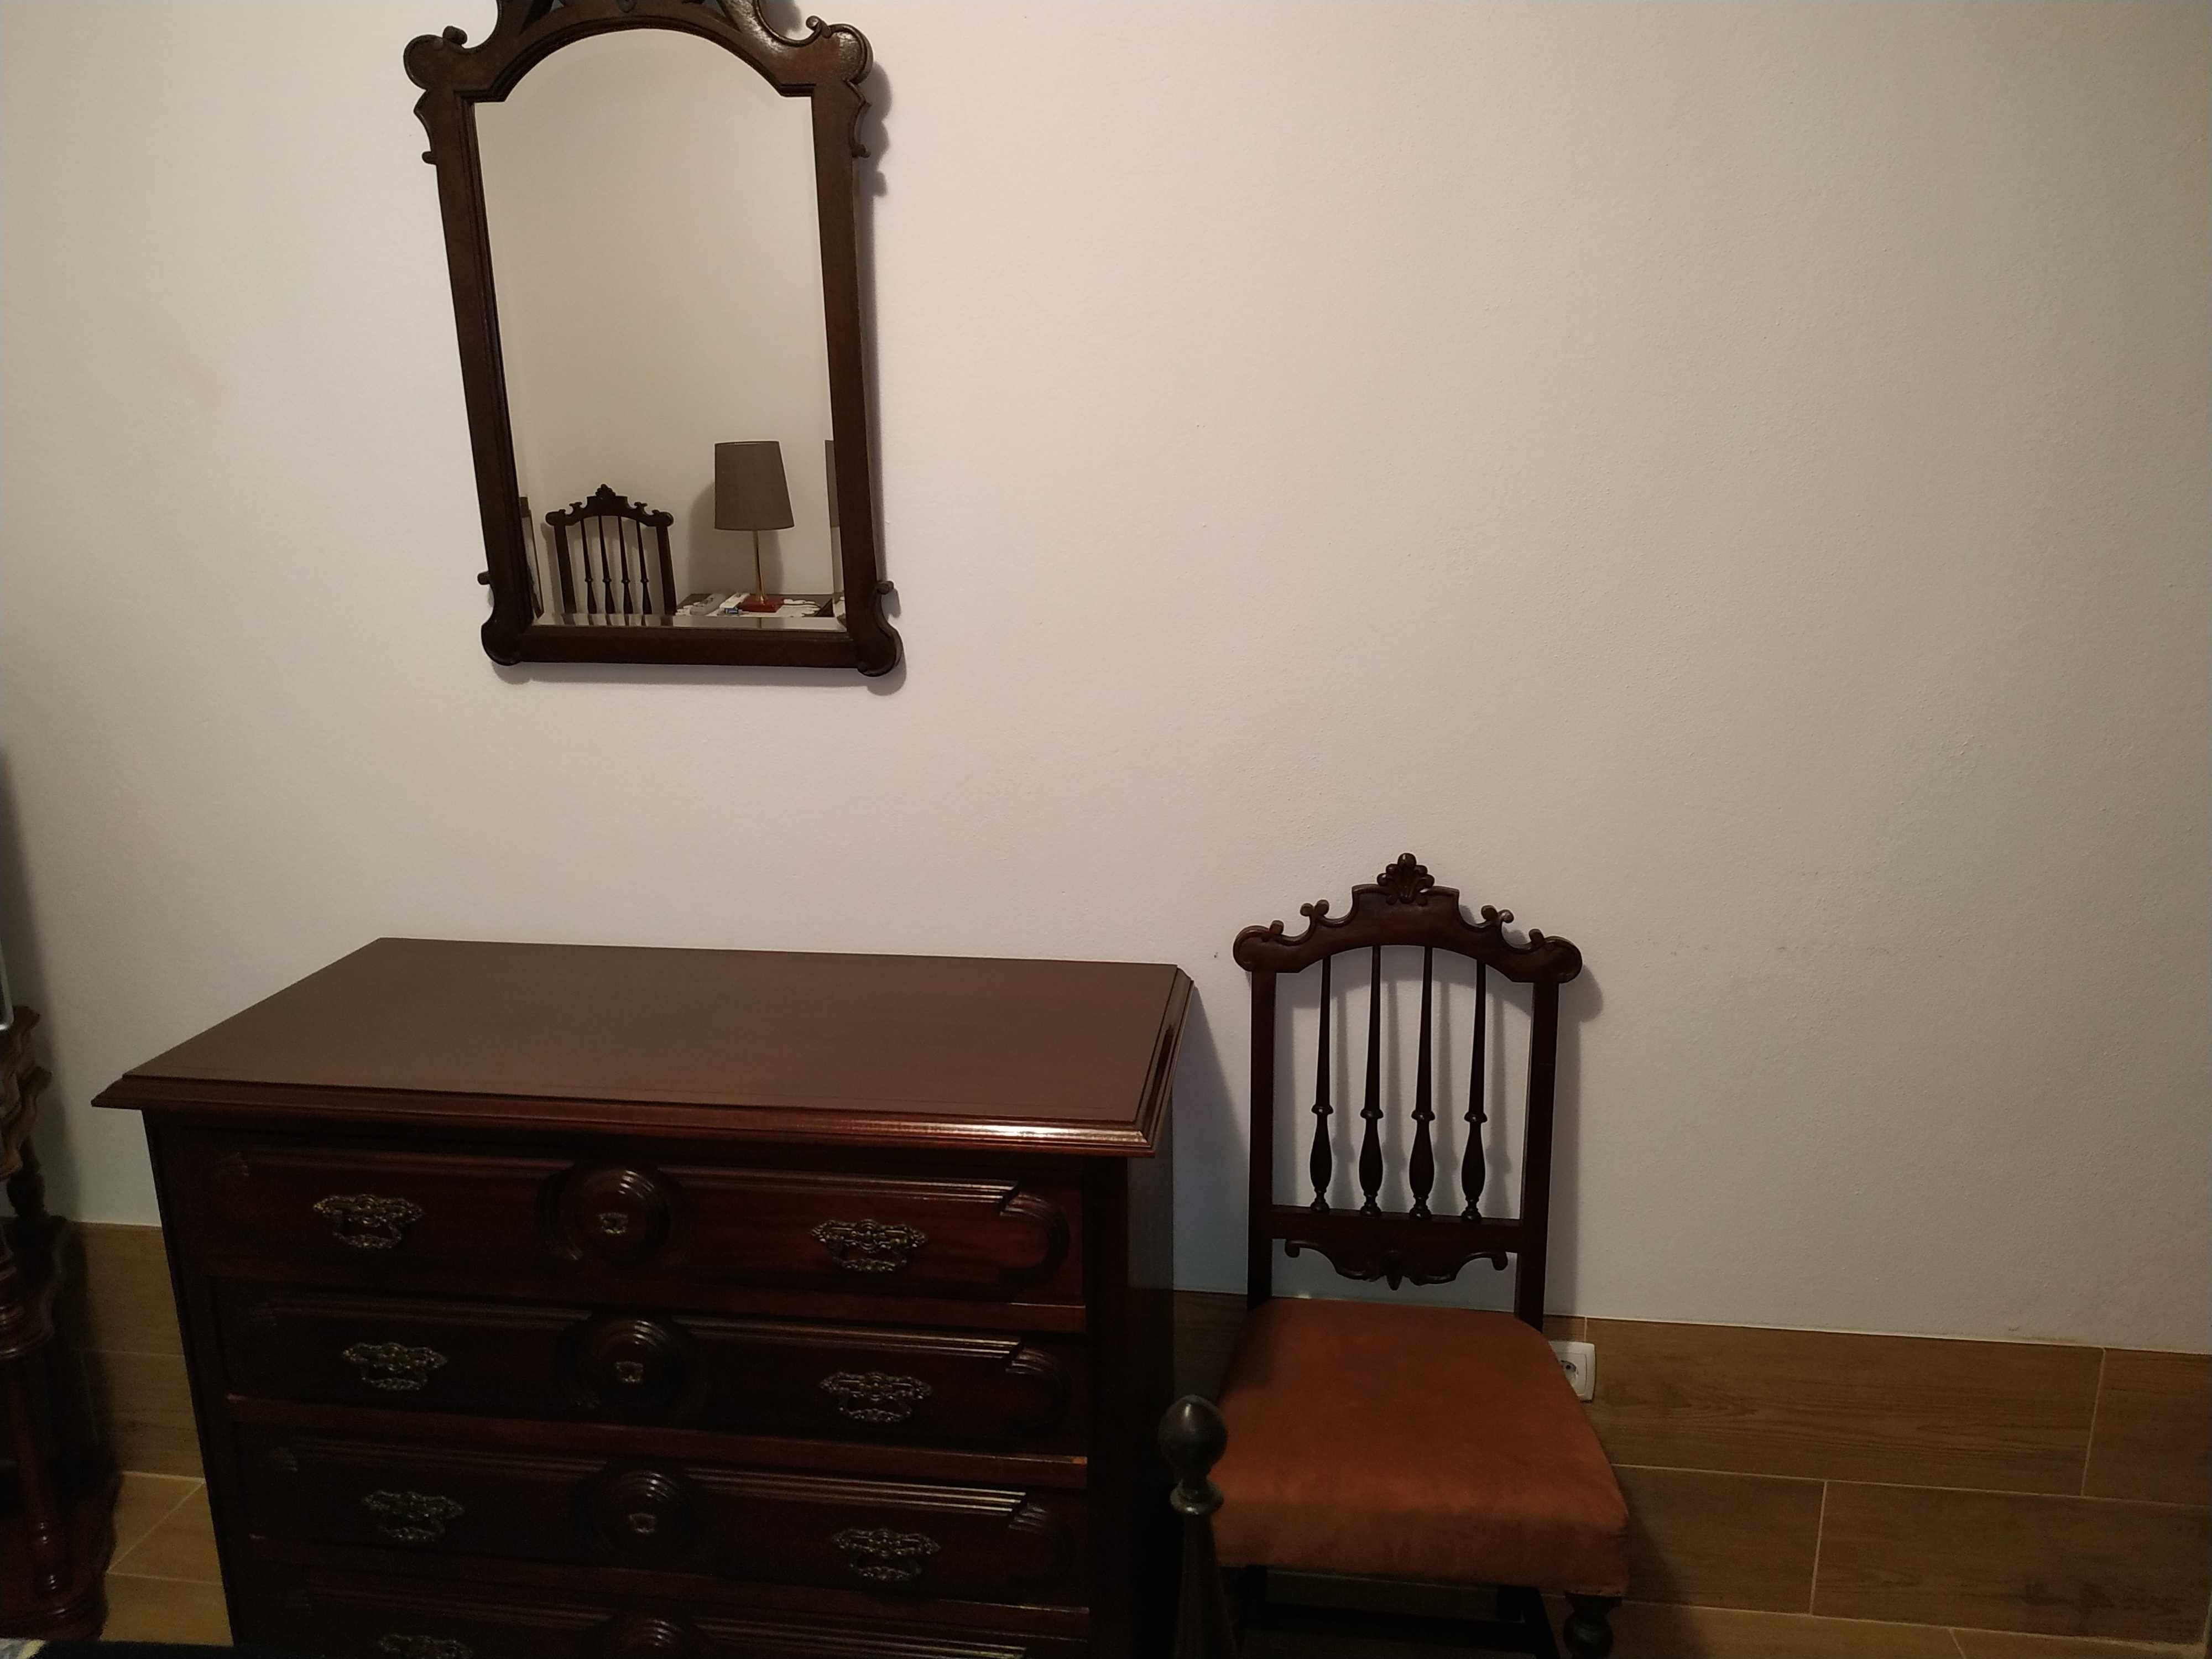 Cama, mesa cabeceira, cómoda, cadeiras, espelho, estilo antigo